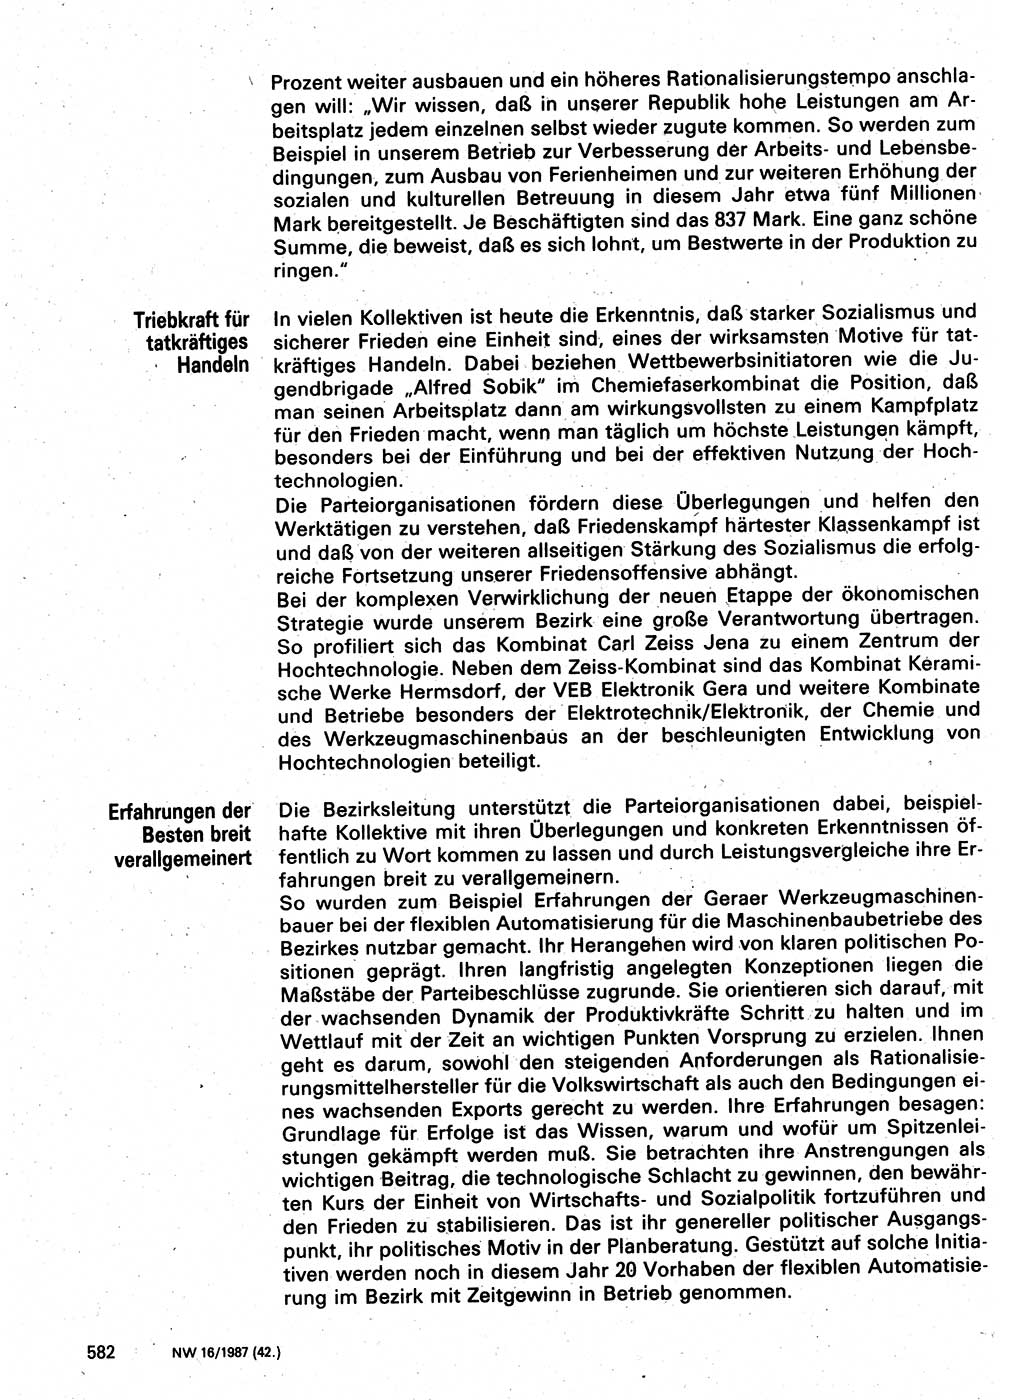 Neuer Weg (NW), Organ des Zentralkomitees (ZK) der SED (Sozialistische Einheitspartei Deutschlands) für Fragen des Parteilebens, 42. Jahrgang [Deutsche Demokratische Republik (DDR)] 1987, Seite 582 (NW ZK SED DDR 1987, S. 582)